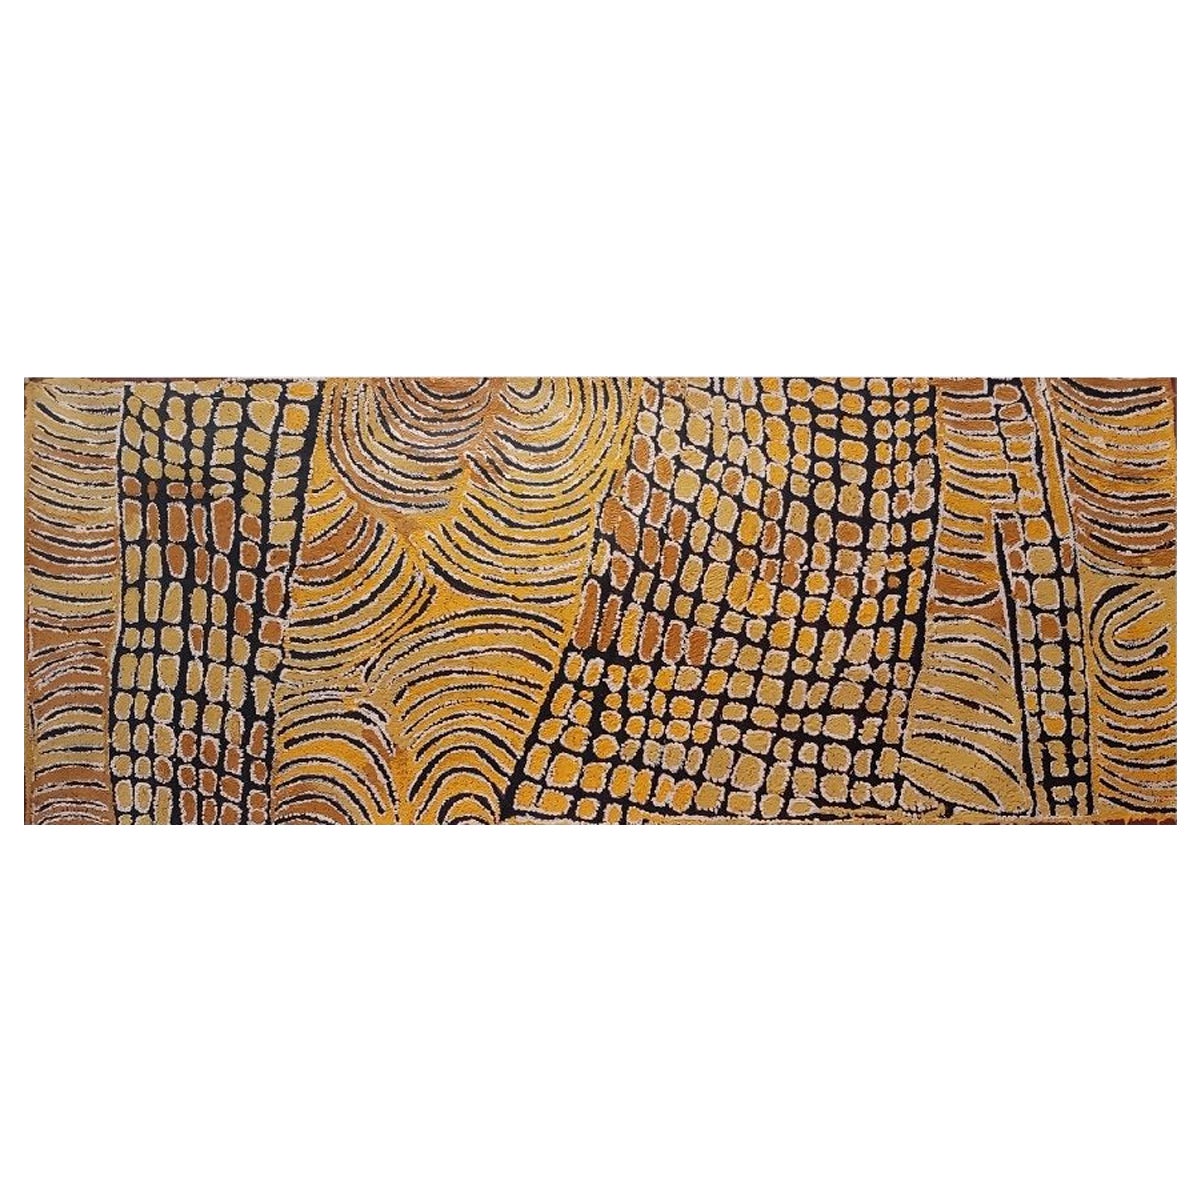 Gemälde der Aborigines von Tjunkiya Napaltjarri (1927-2009)